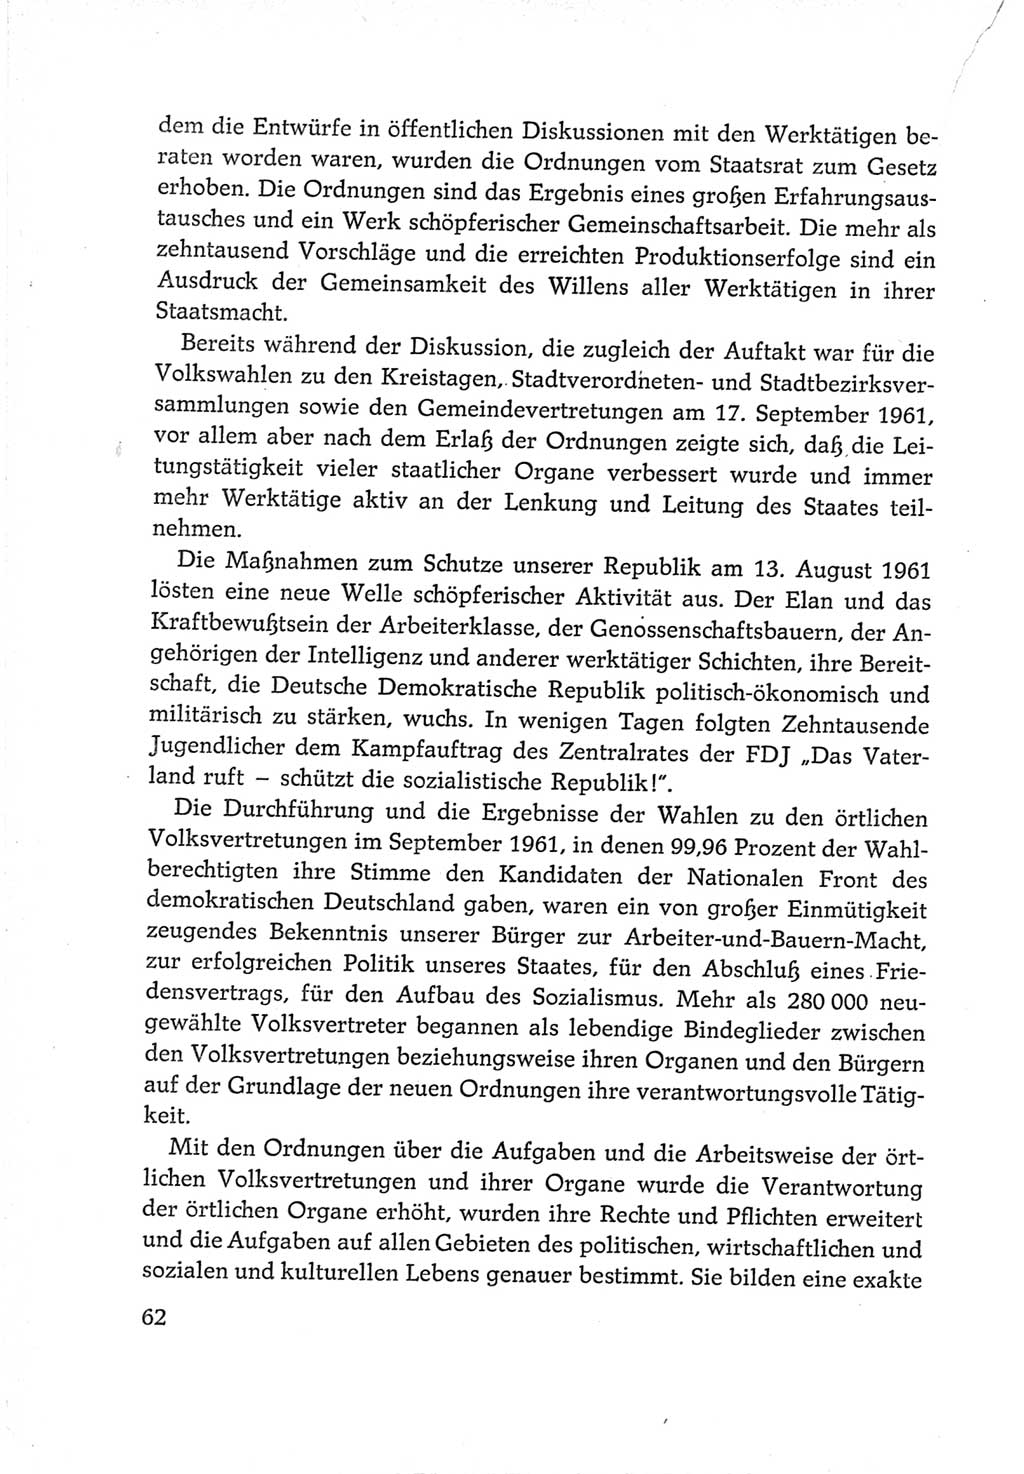 Protokoll der Verhandlungen des Ⅵ. Parteitages der Sozialistischen Einheitspartei Deutschlands (SED) [Deutsche Demokratische Republik (DDR)] 1963, Band Ⅳ, Seite 62 (Prot. Verh. Ⅵ. PT SED DDR 1963, Bd. Ⅳ, S. 62)